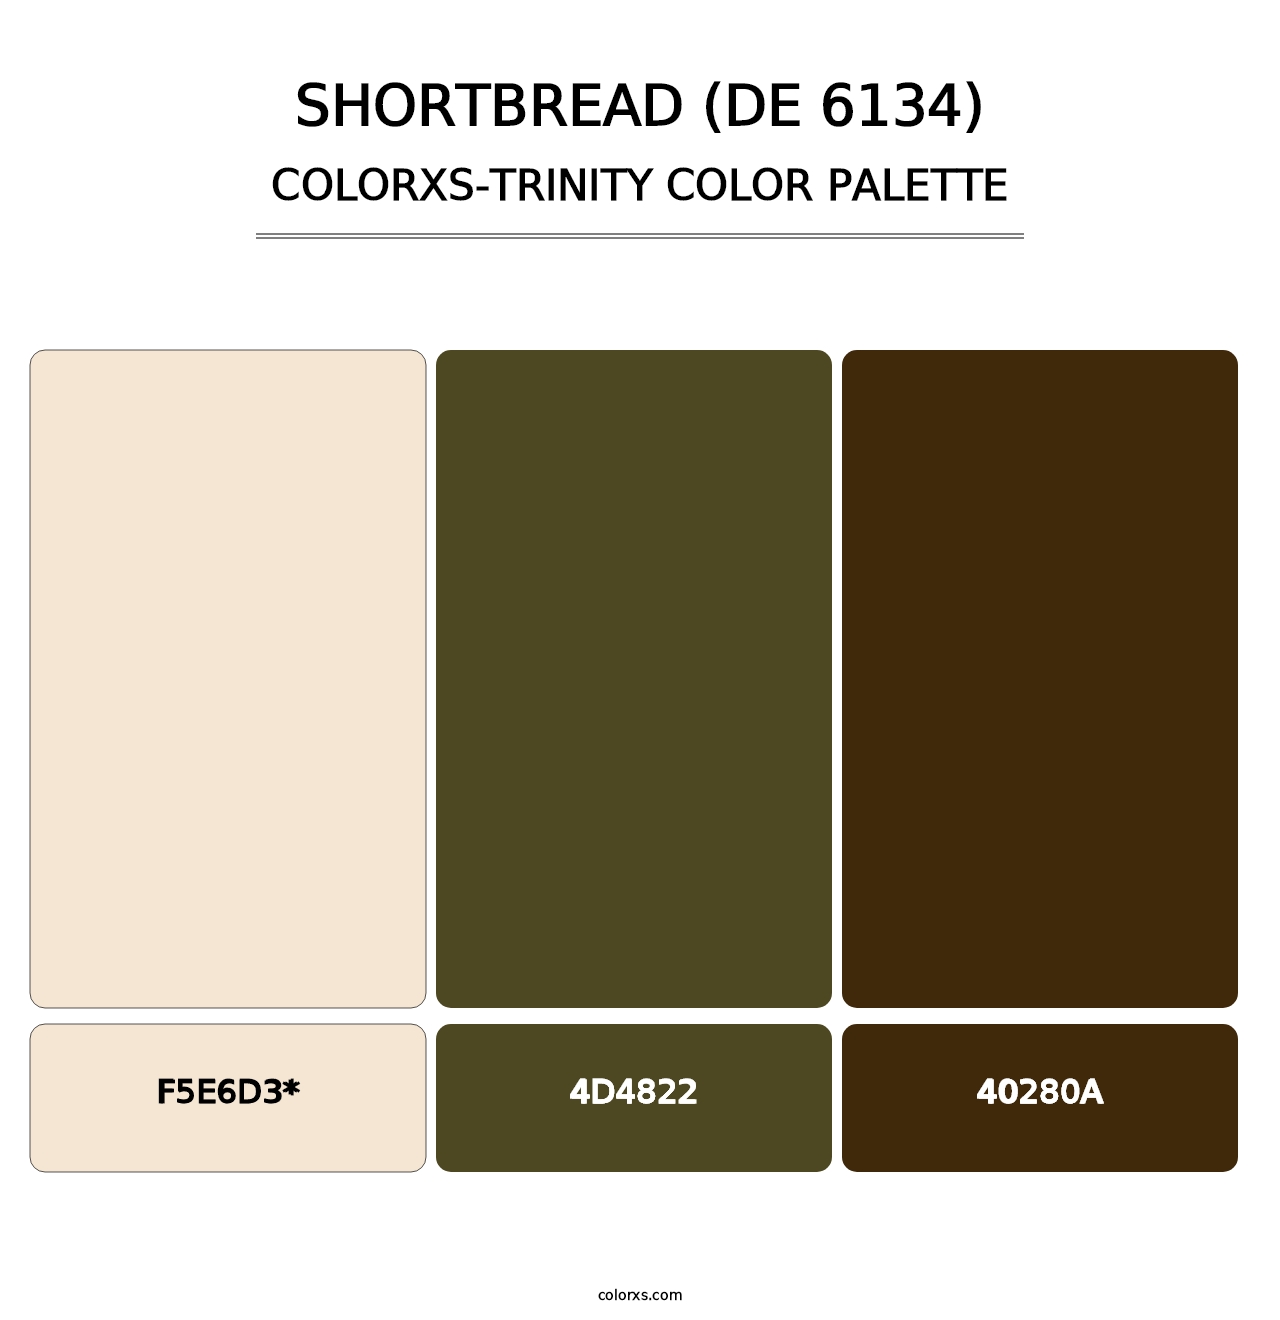 Shortbread (DE 6134) - Colorxs Trinity Palette